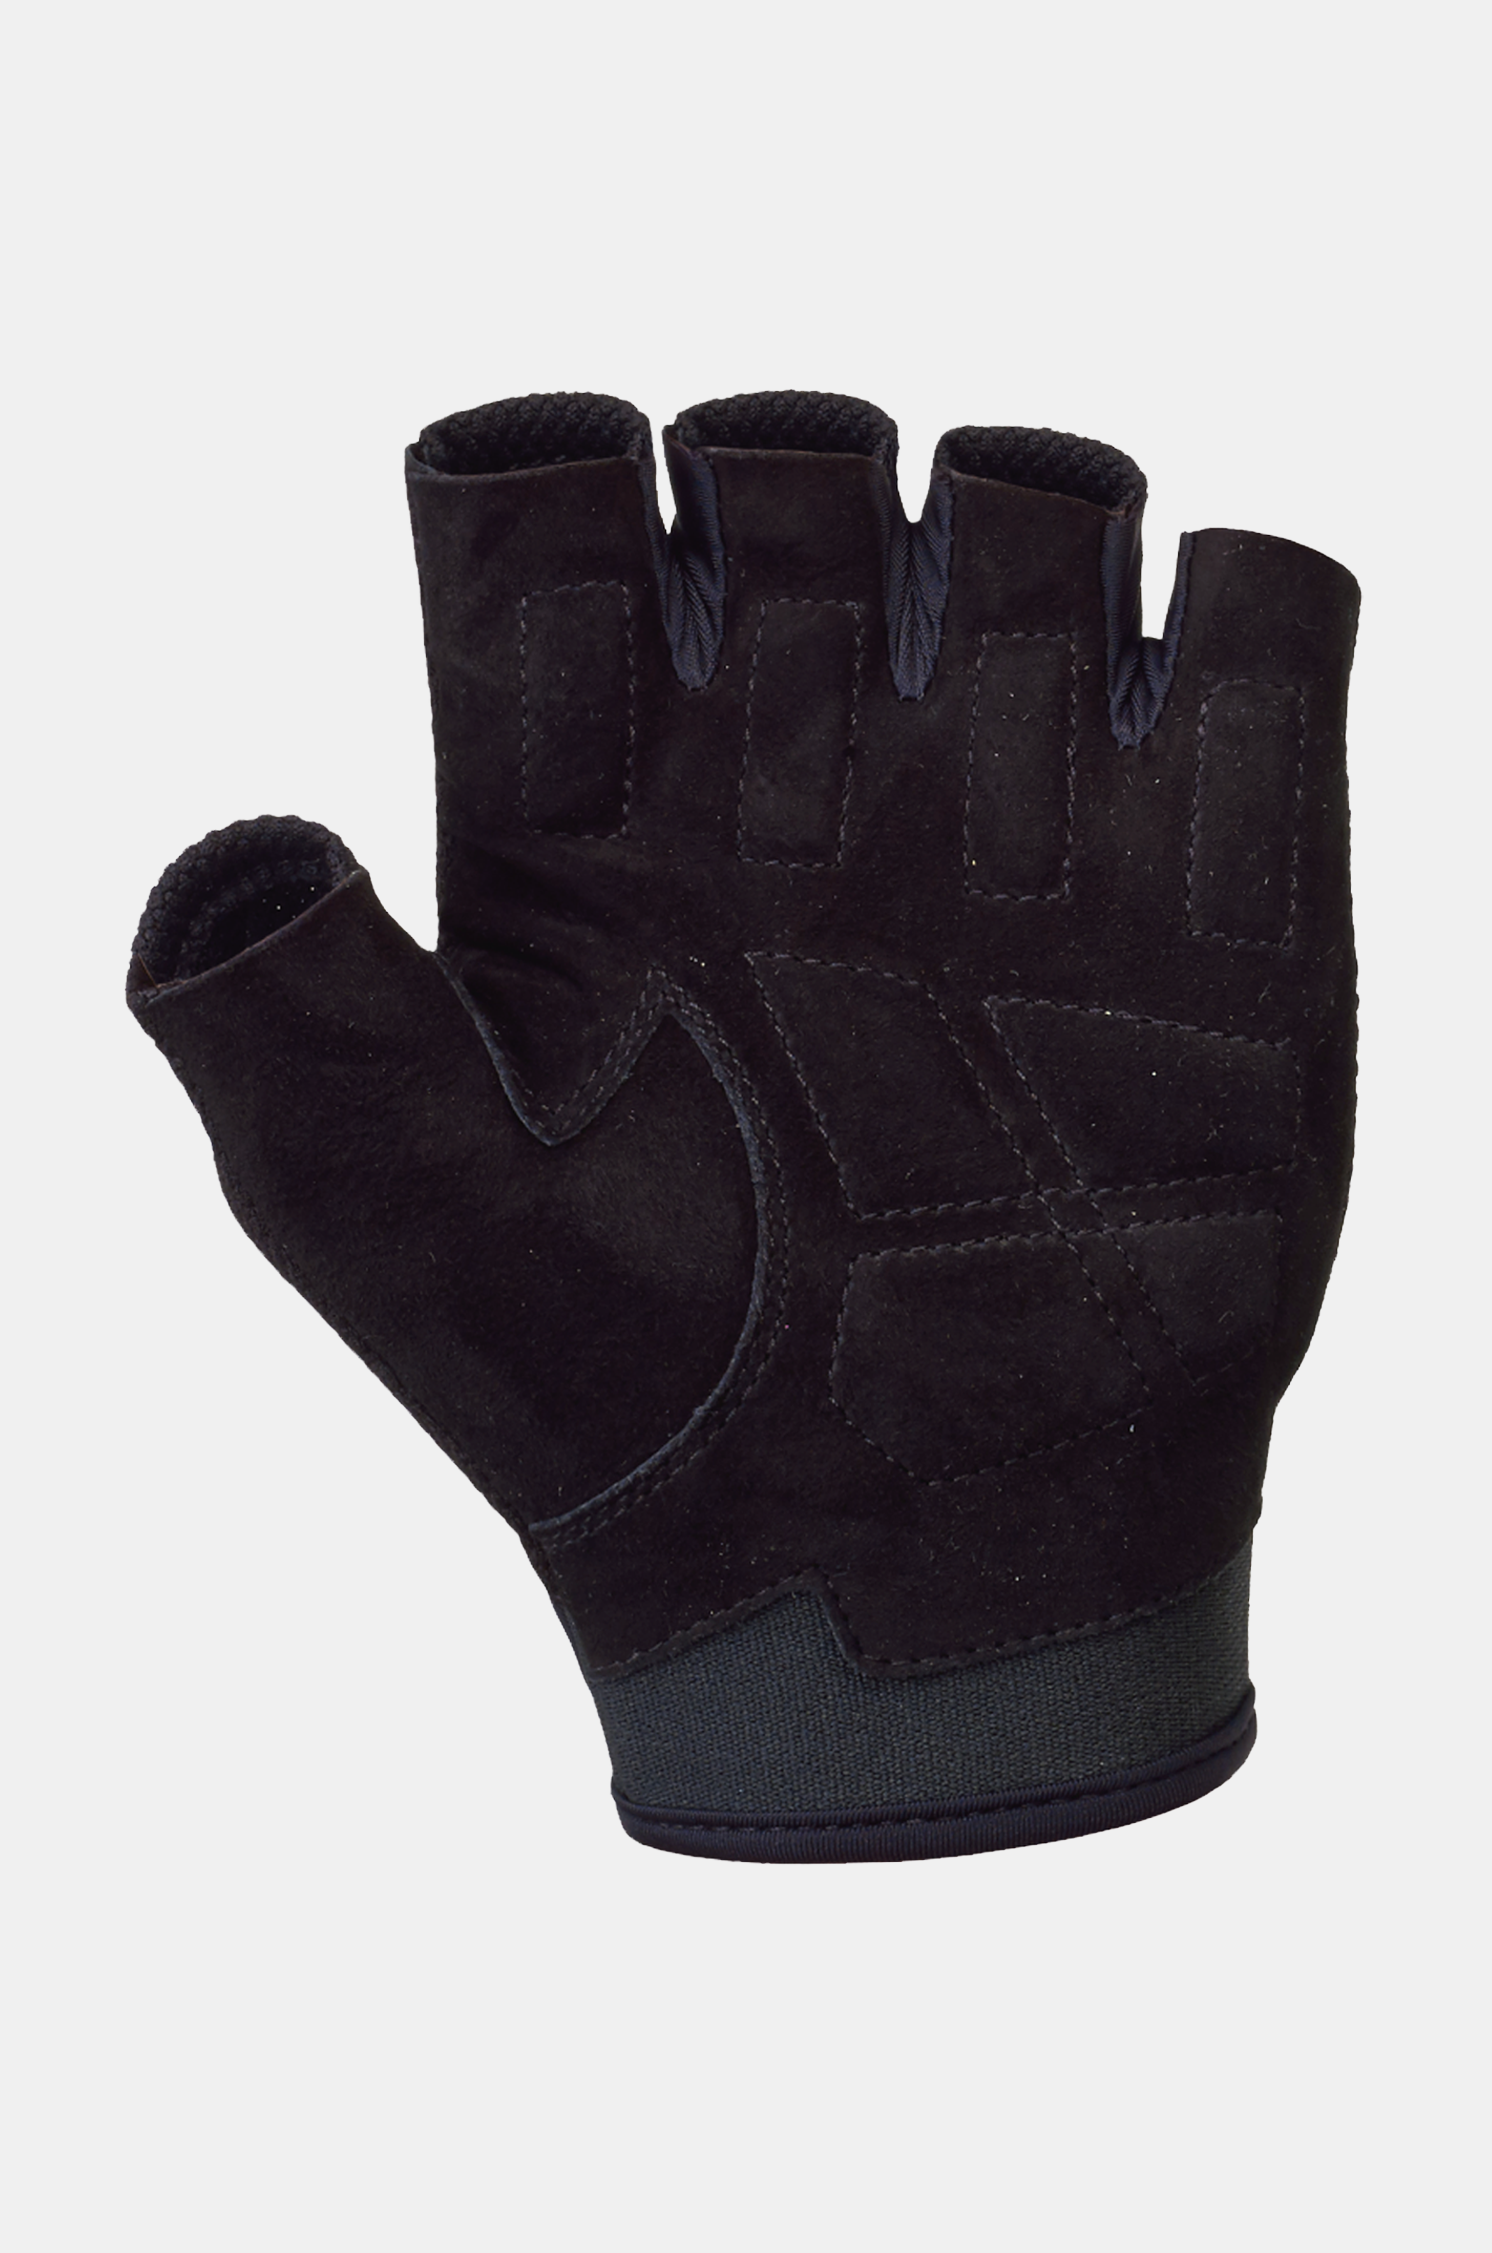 STING K1 Exercise Training Glove